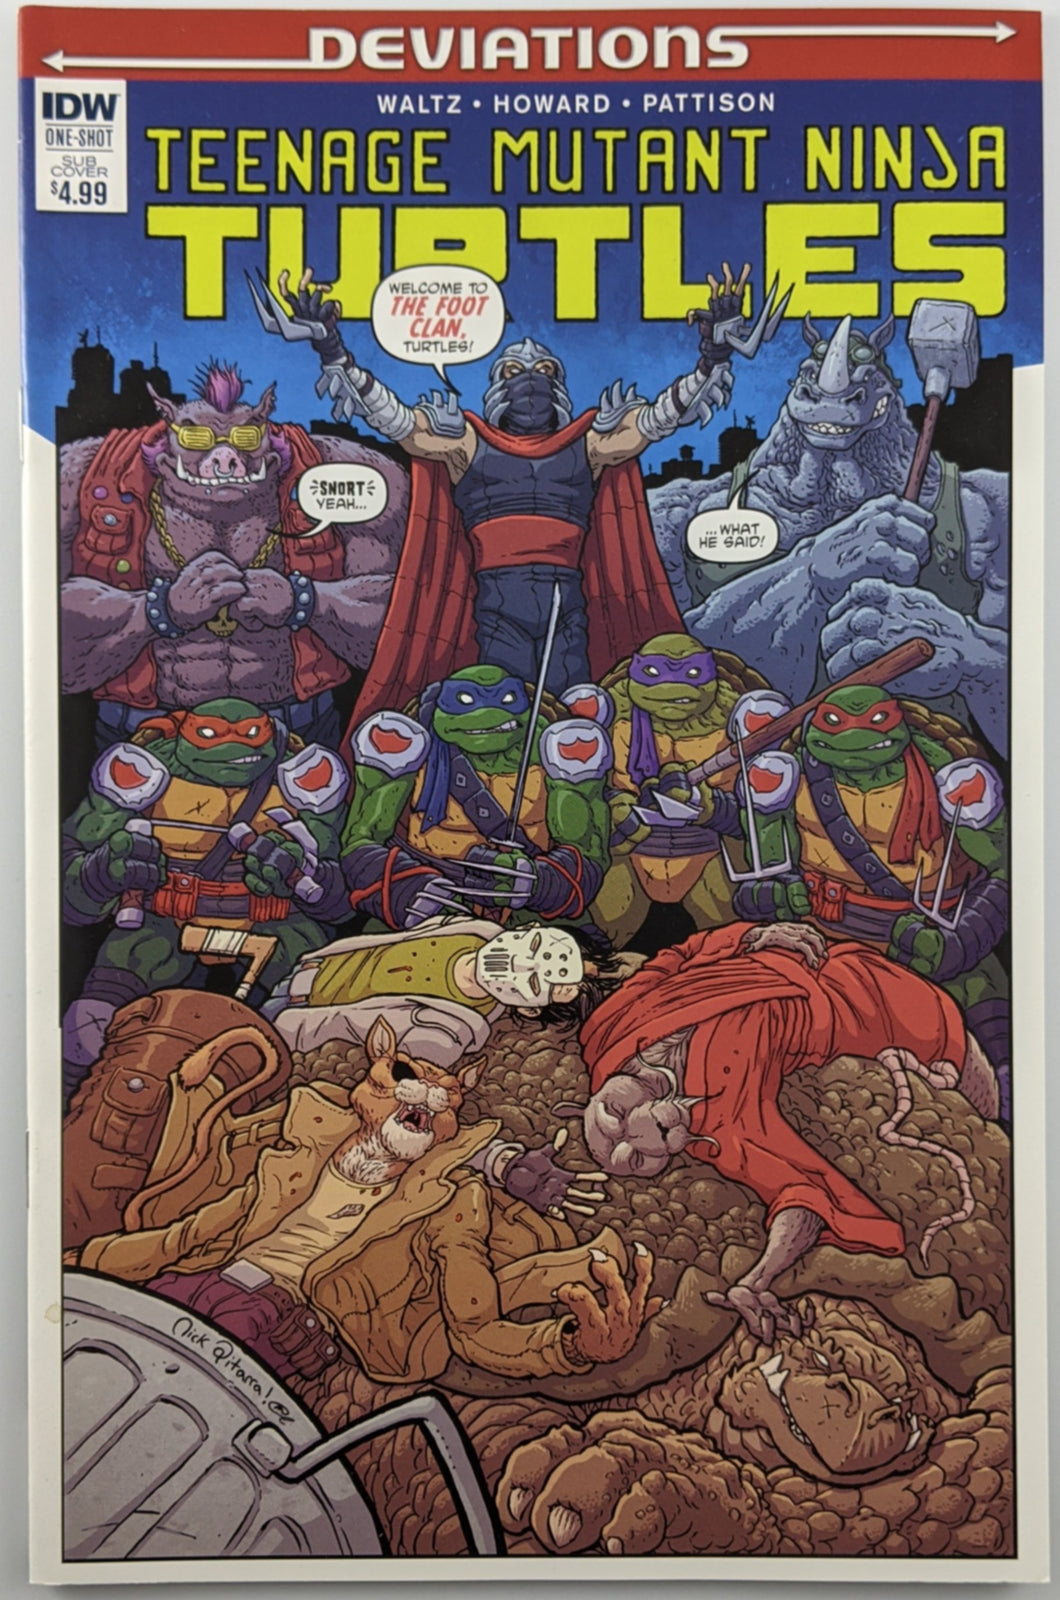 Teenage Mutant Ninja Turtles Deviations (2016) #1 Sub Cover